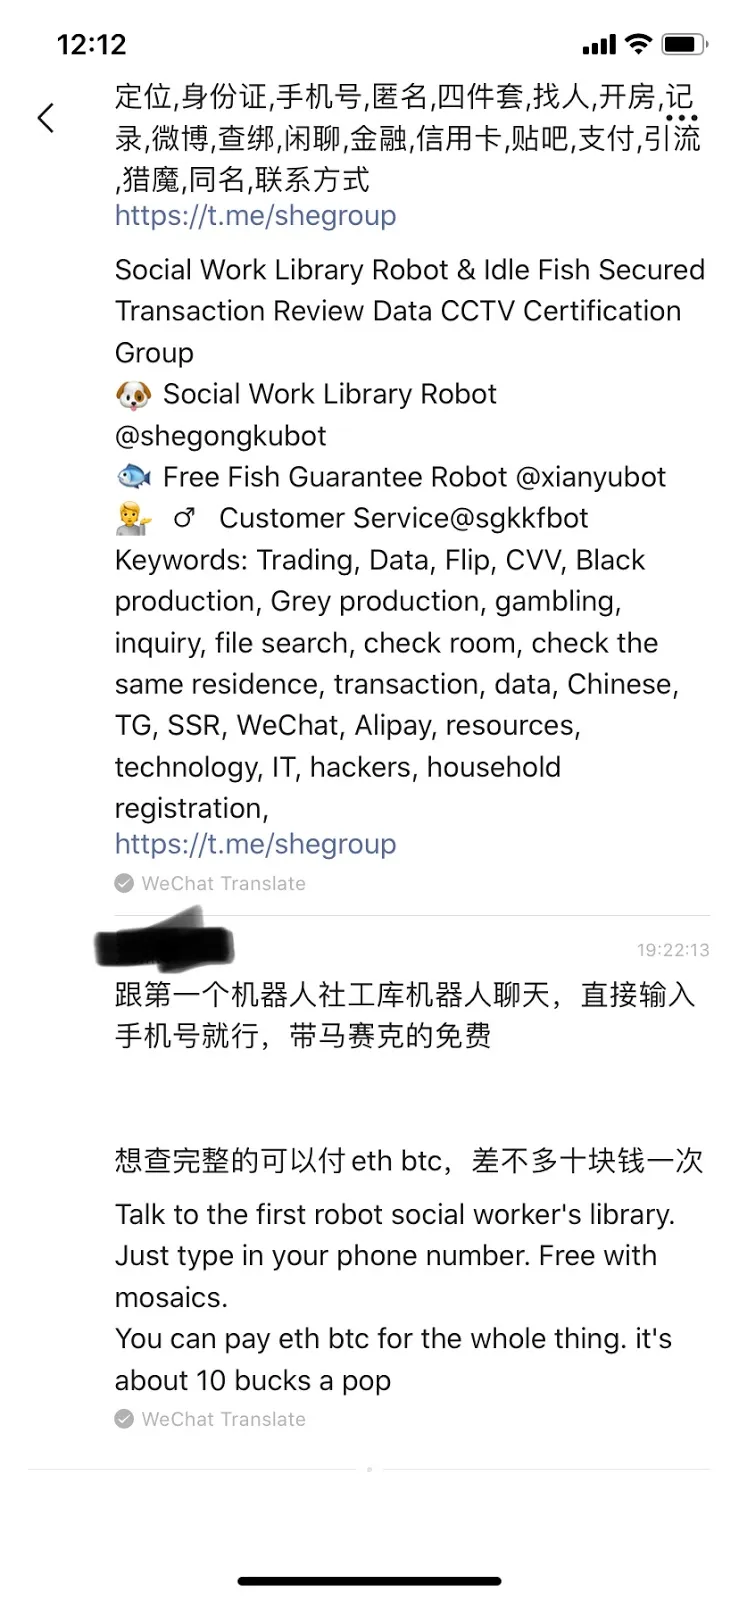 weibo data leak